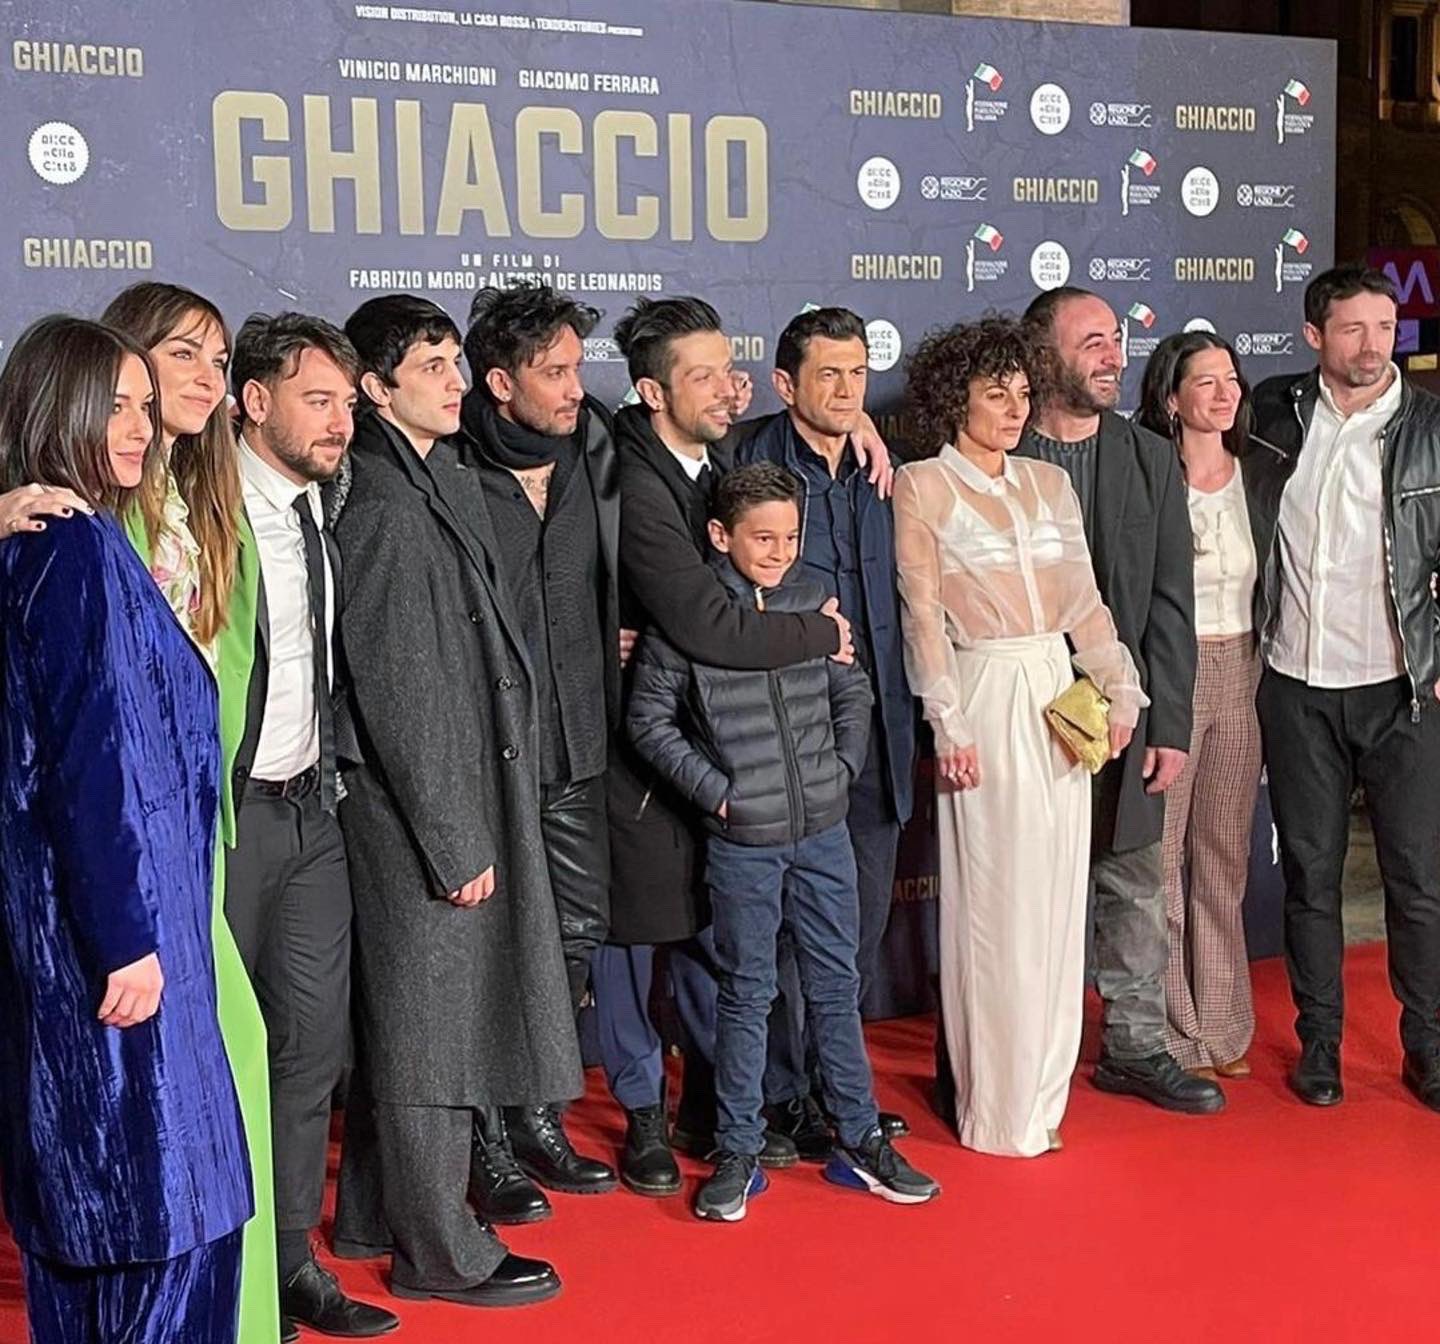 Ieri a Roma la prima di "Ghiaccio" film sulla boxe che unisce valori, poesia e verità